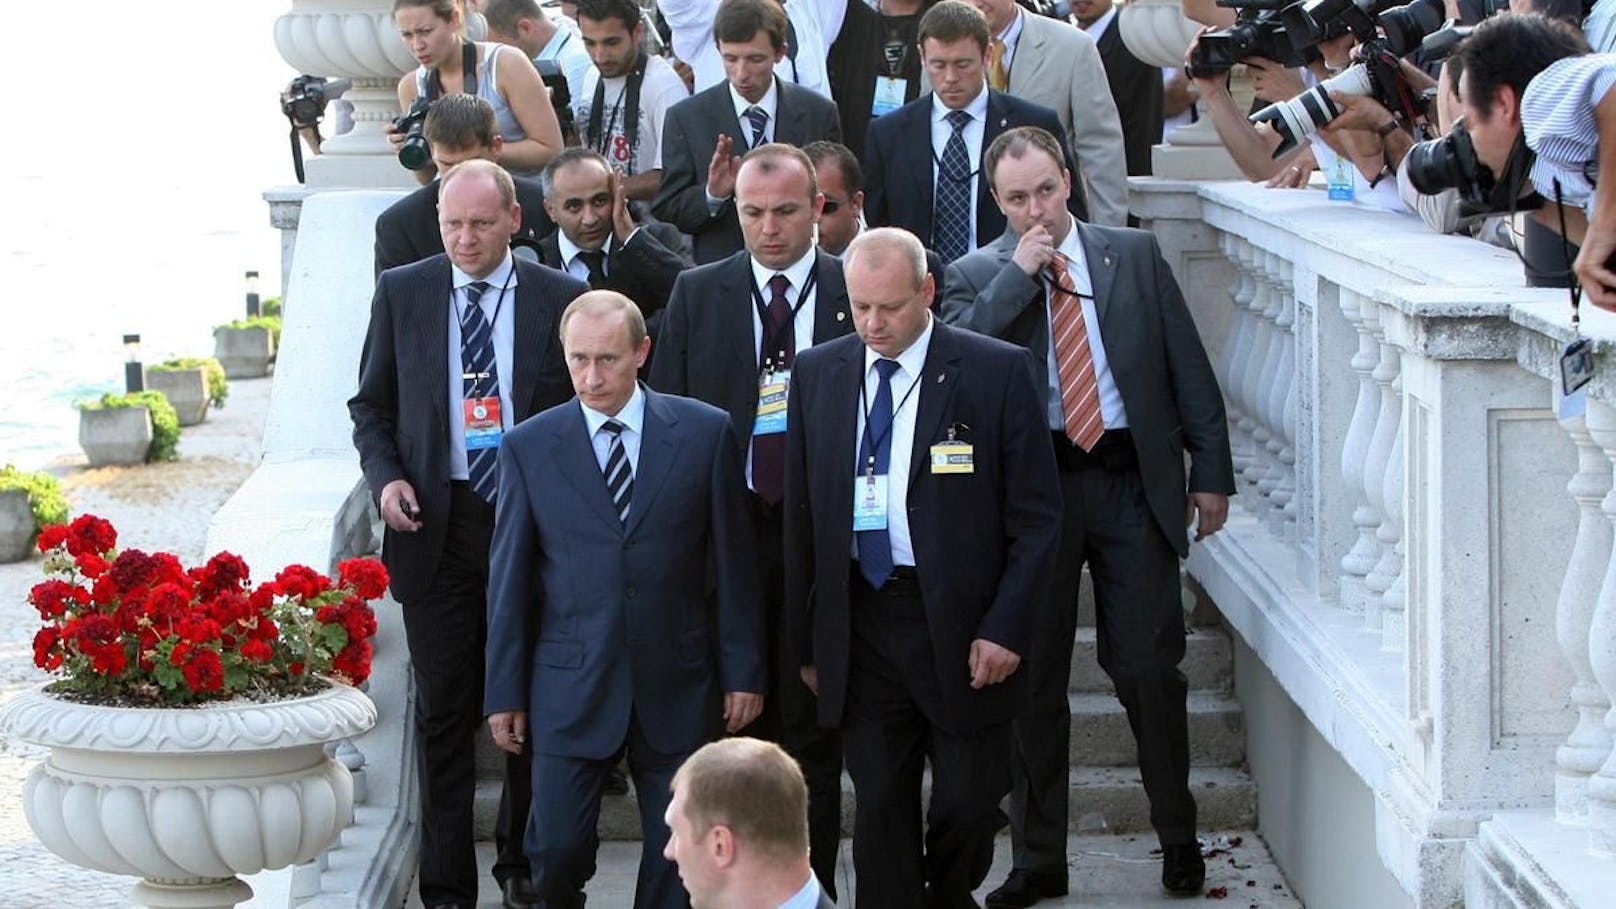 Putin bei einem Besuch in Istanbul im Jahr 2007: In seiner Entourage befinden sich mehrere "Musketiere".